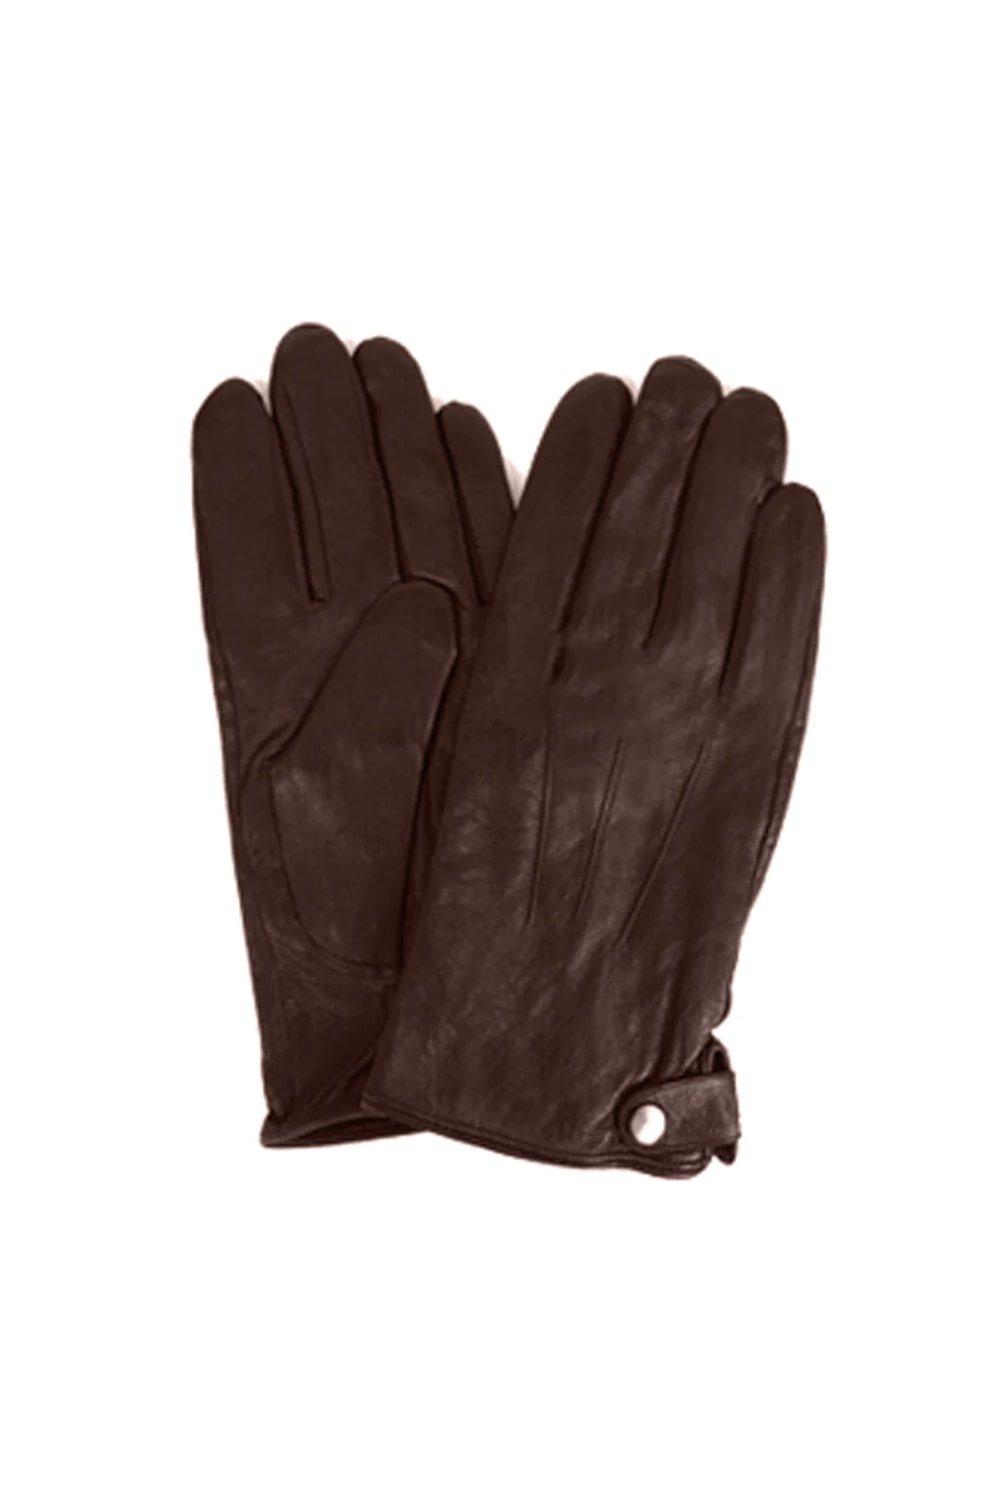 Классические кожаные зимние перчатки Eastern Counties Leather, коричневый тина кожаные перчатки eastern counties leather красный